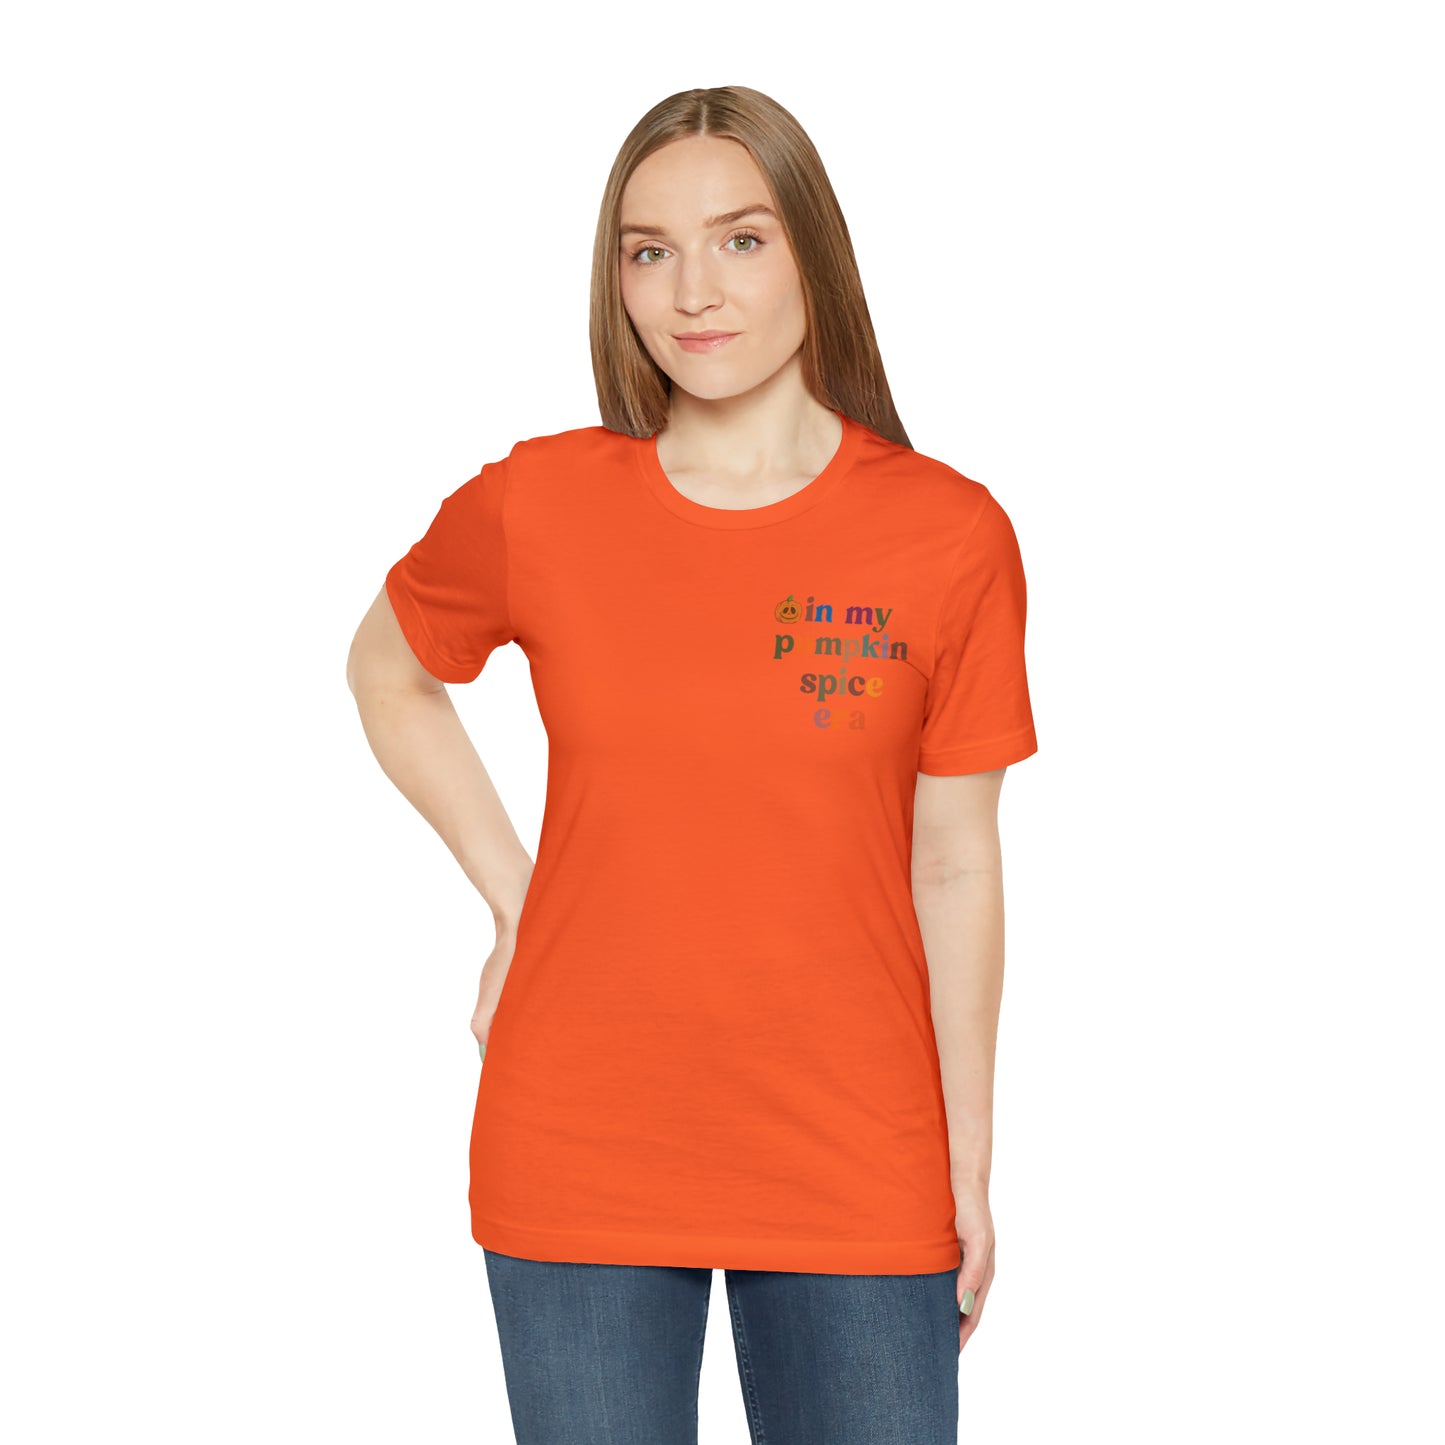 In My Pumpkin Spice Era Shirt, Halloween Pumpkin Shirt, Retro Fall Vibes Pumpkin Shirt, Pumpkin Season Shirt, Hey There Pumpkin Shirt, T784